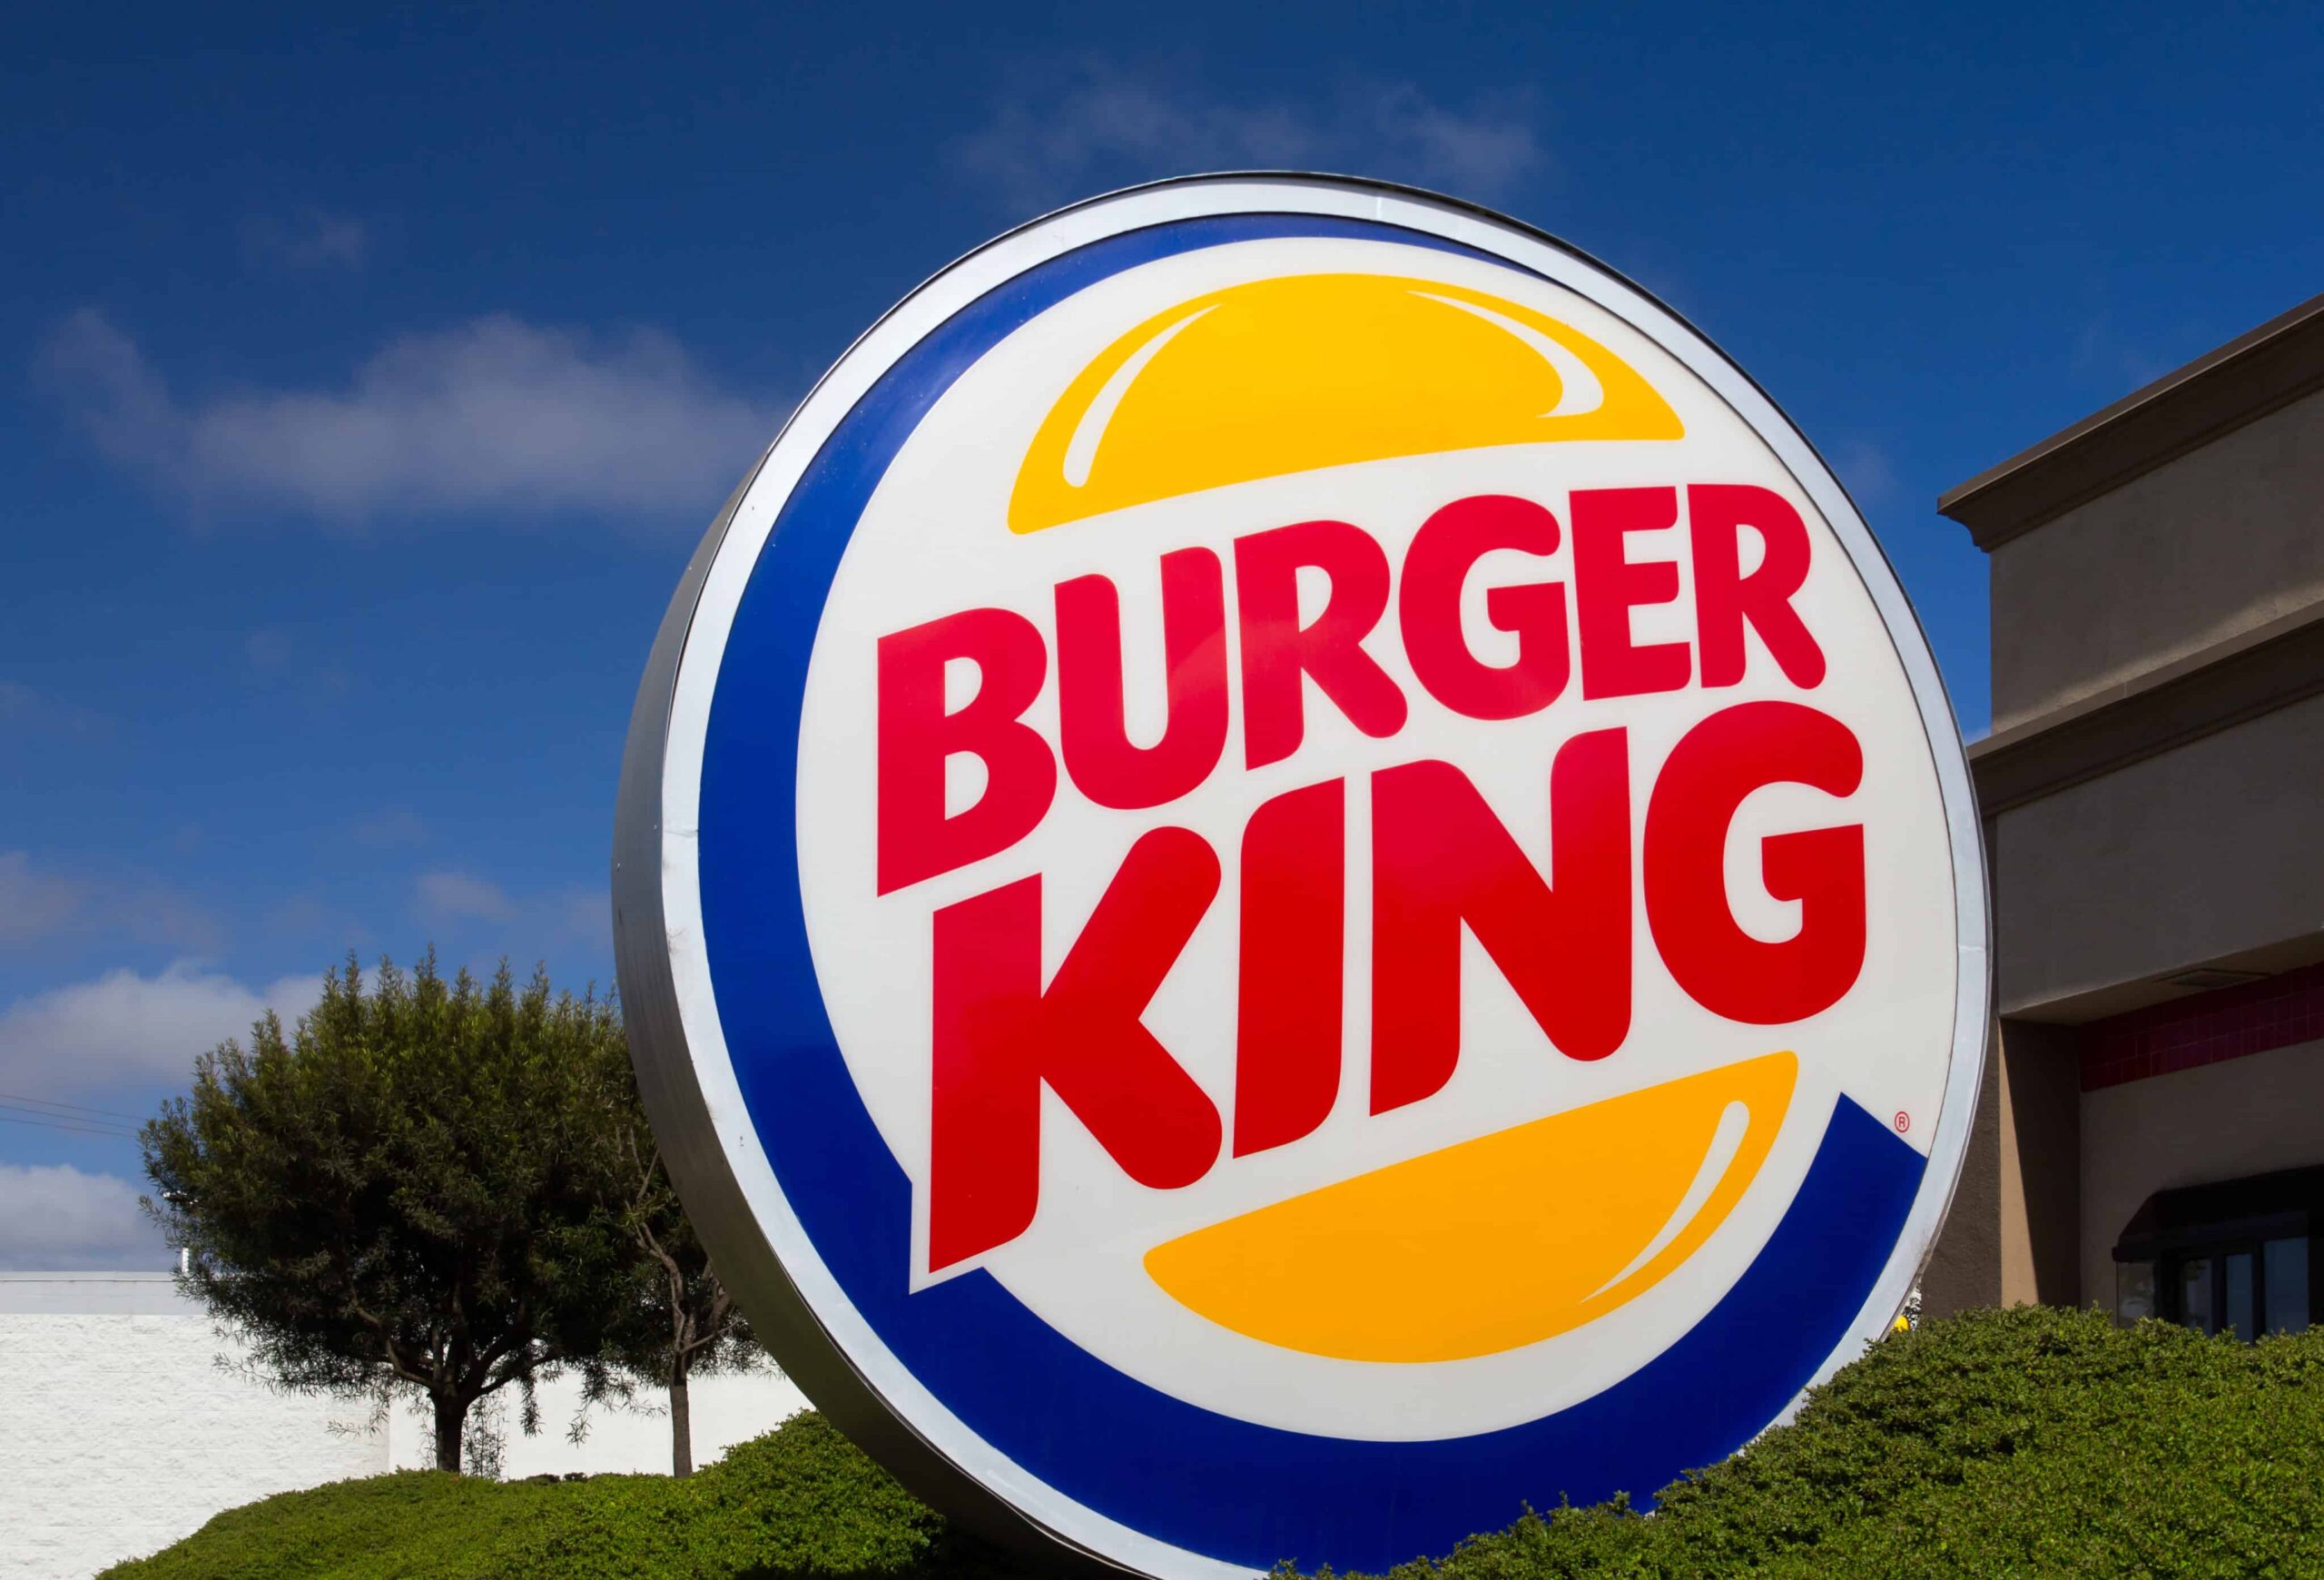 تقدم STIIIZY وظائف إنتاج MJ إلى 400 عامل Laid-Off Burger King في ميشيغان